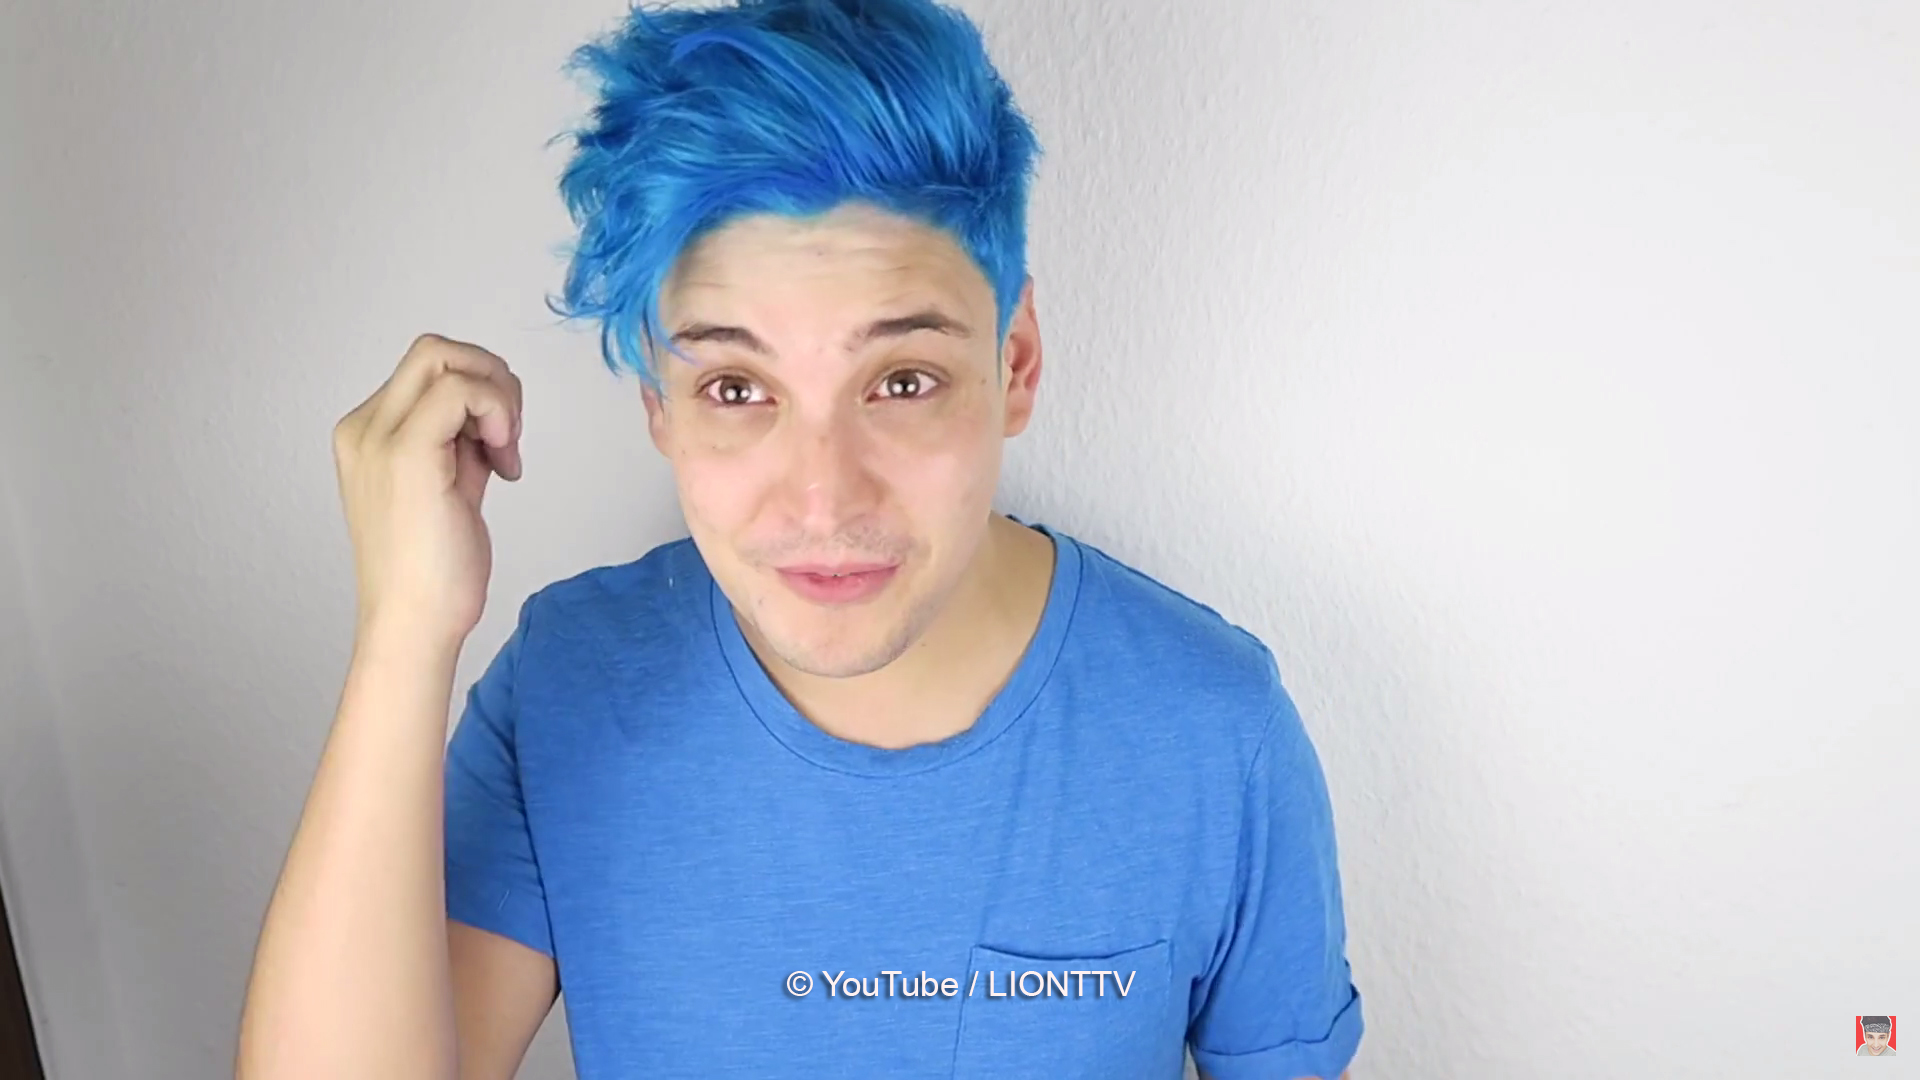 Dieser männliche YouTuber hat sich die Haare BLAU gefärbt